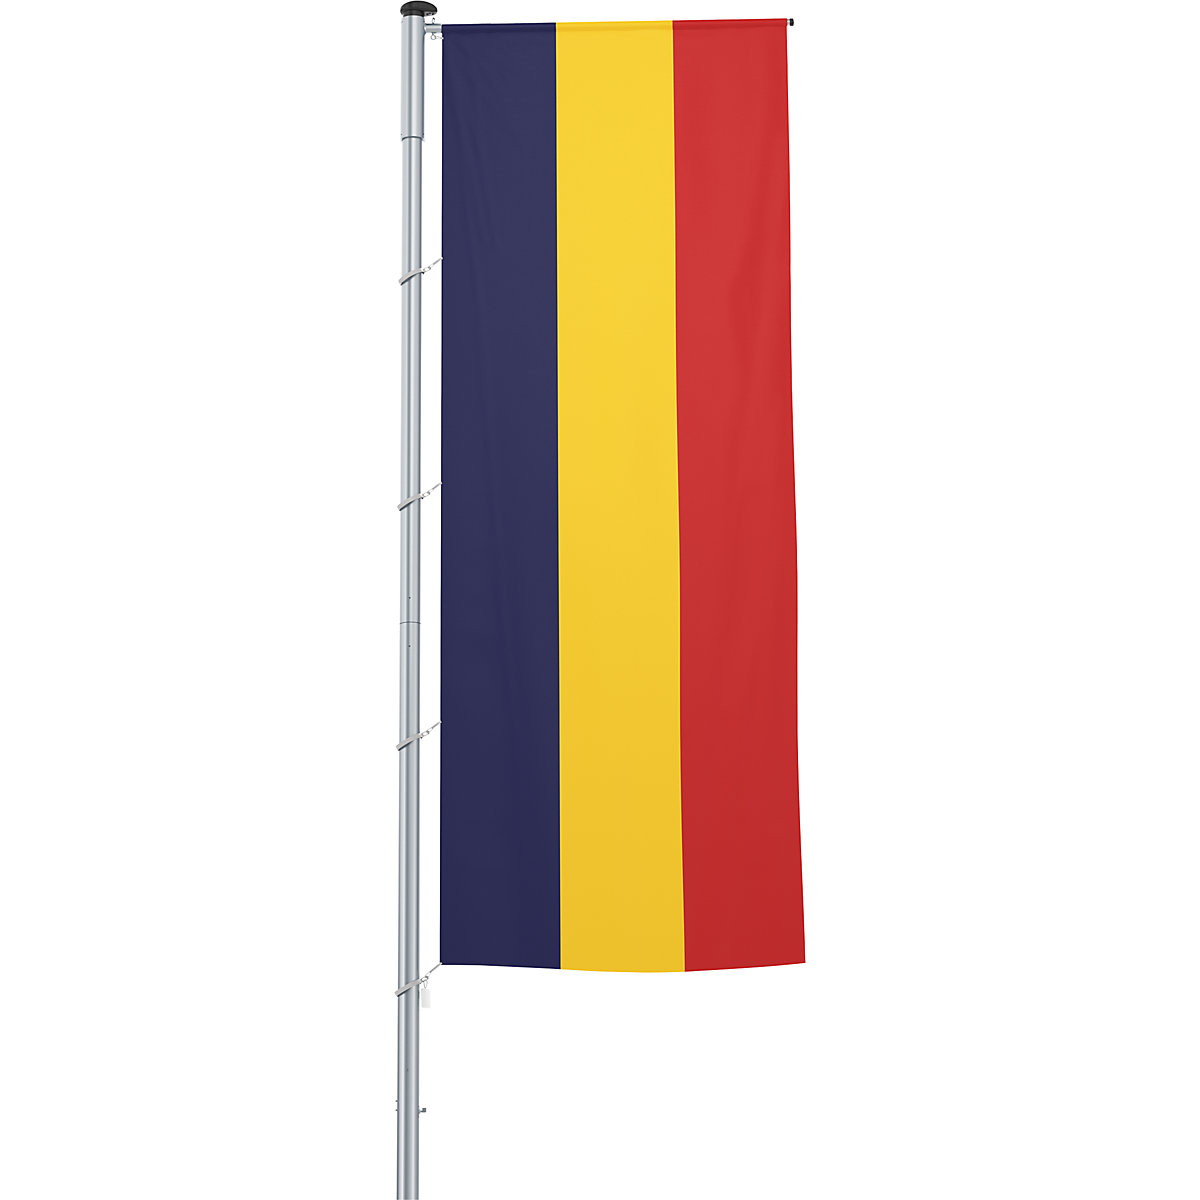 Vlajka na pozdĺžne upevnenie na stožiar/národná vlajka – Mannus, formát 1,2 x 3 m, Rumunsko-24